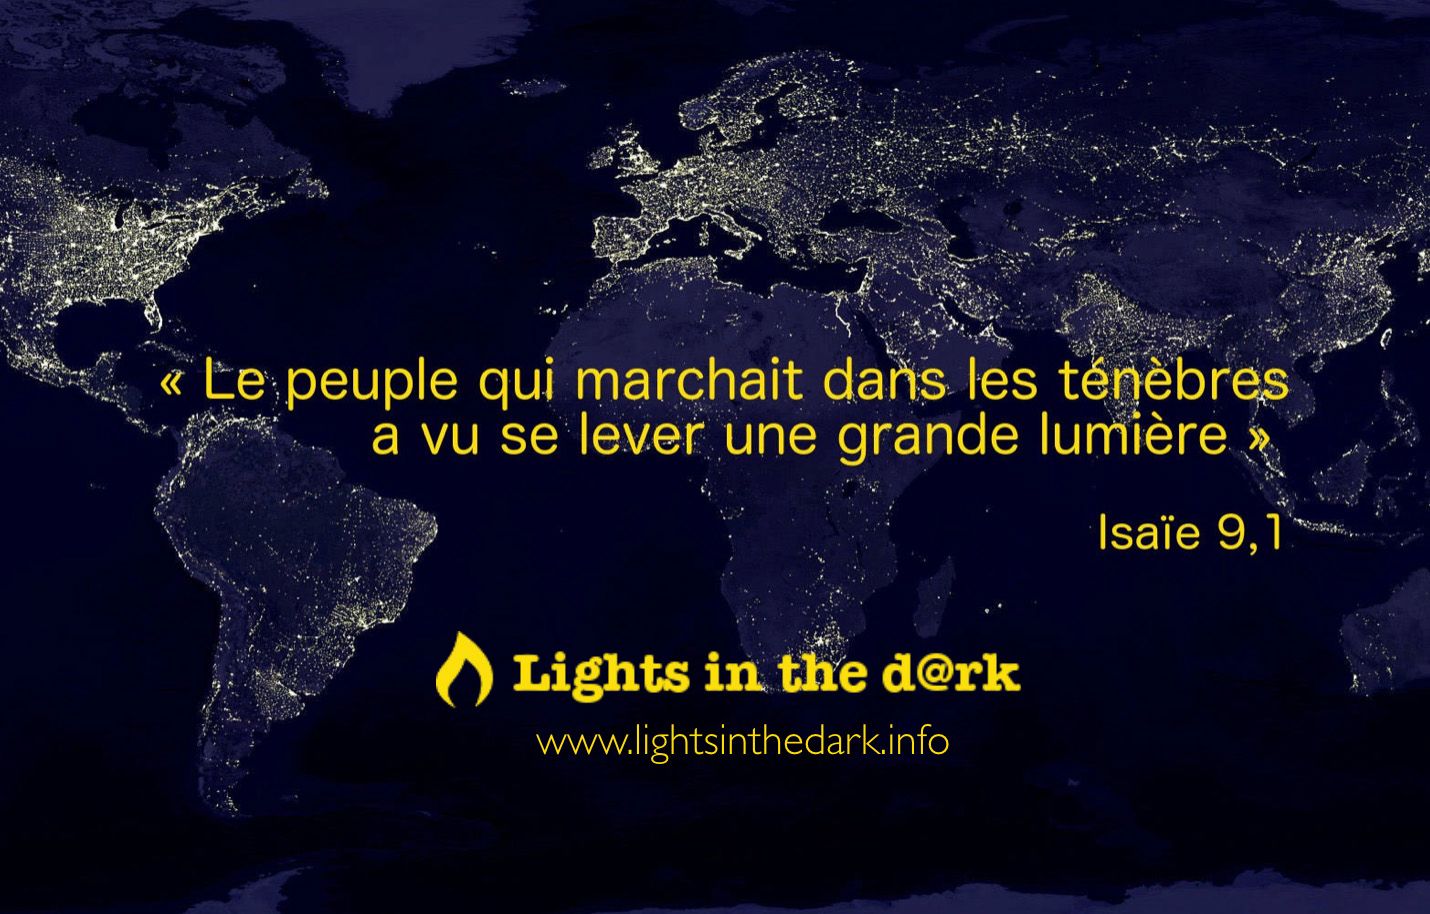 Le peuple qui marchait dans les ténèbres a vu se lever une grande lumière (Isaïe 9,1)